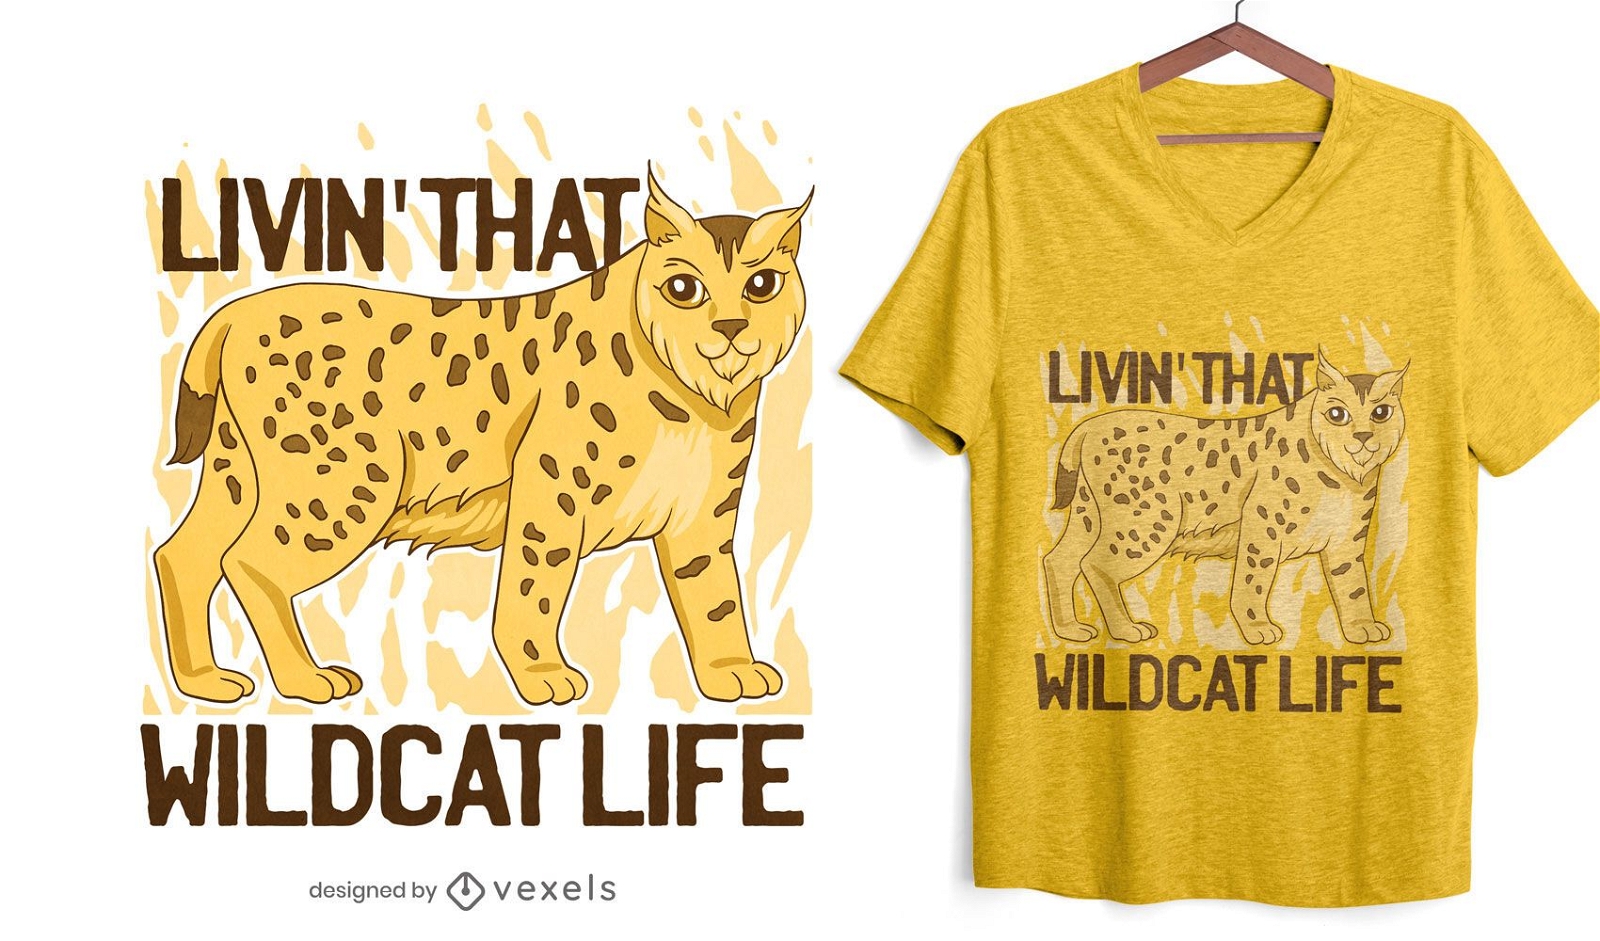 Diseño de camiseta wildcat life